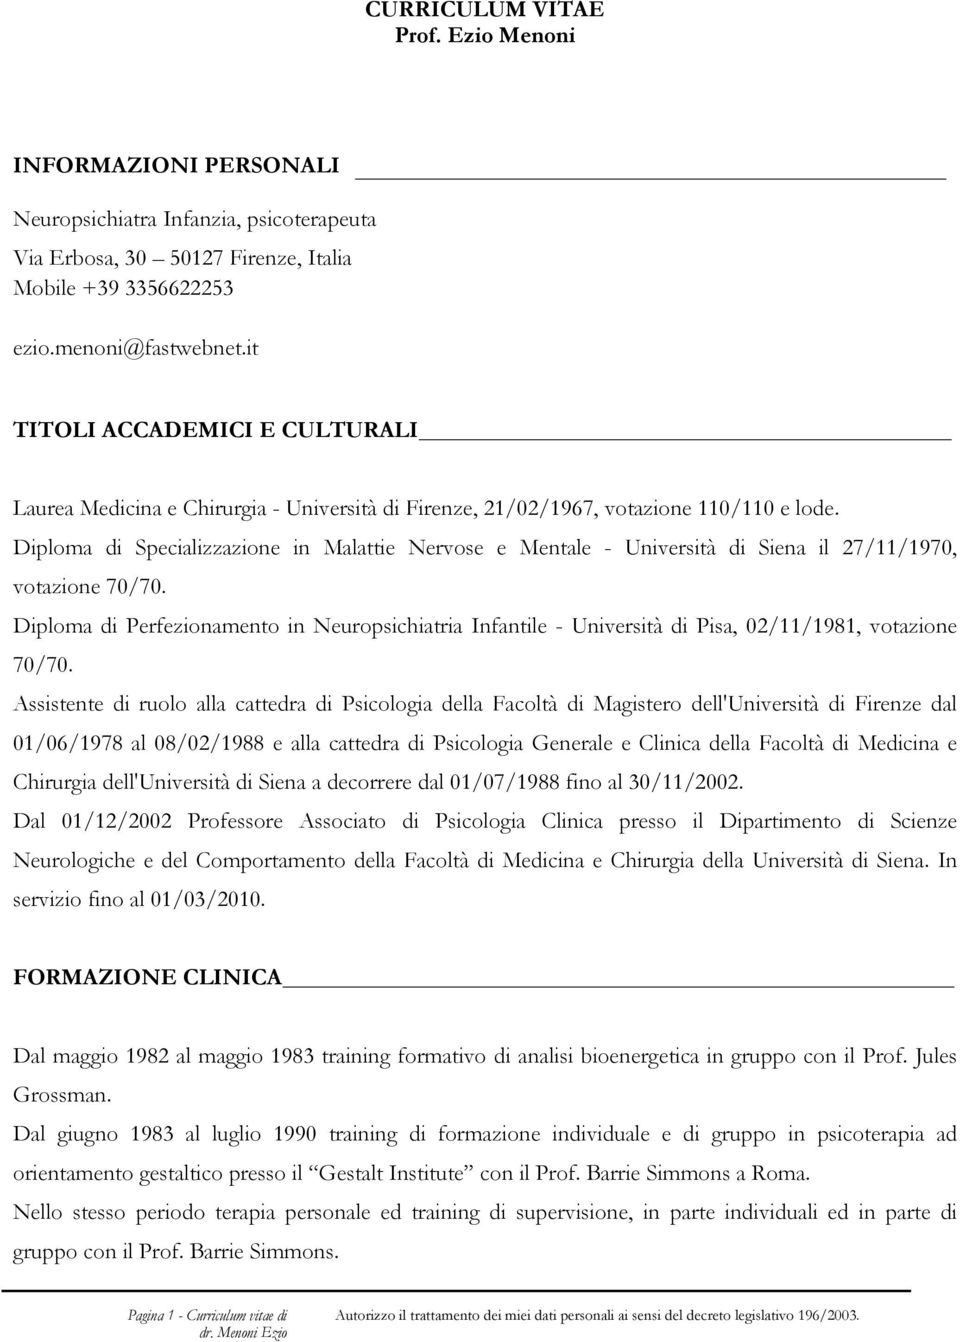 Diploma di Specializzazione in Malattie Nervose e Mentale - Università di Siena il 27/11/1970, votazione 70/70.